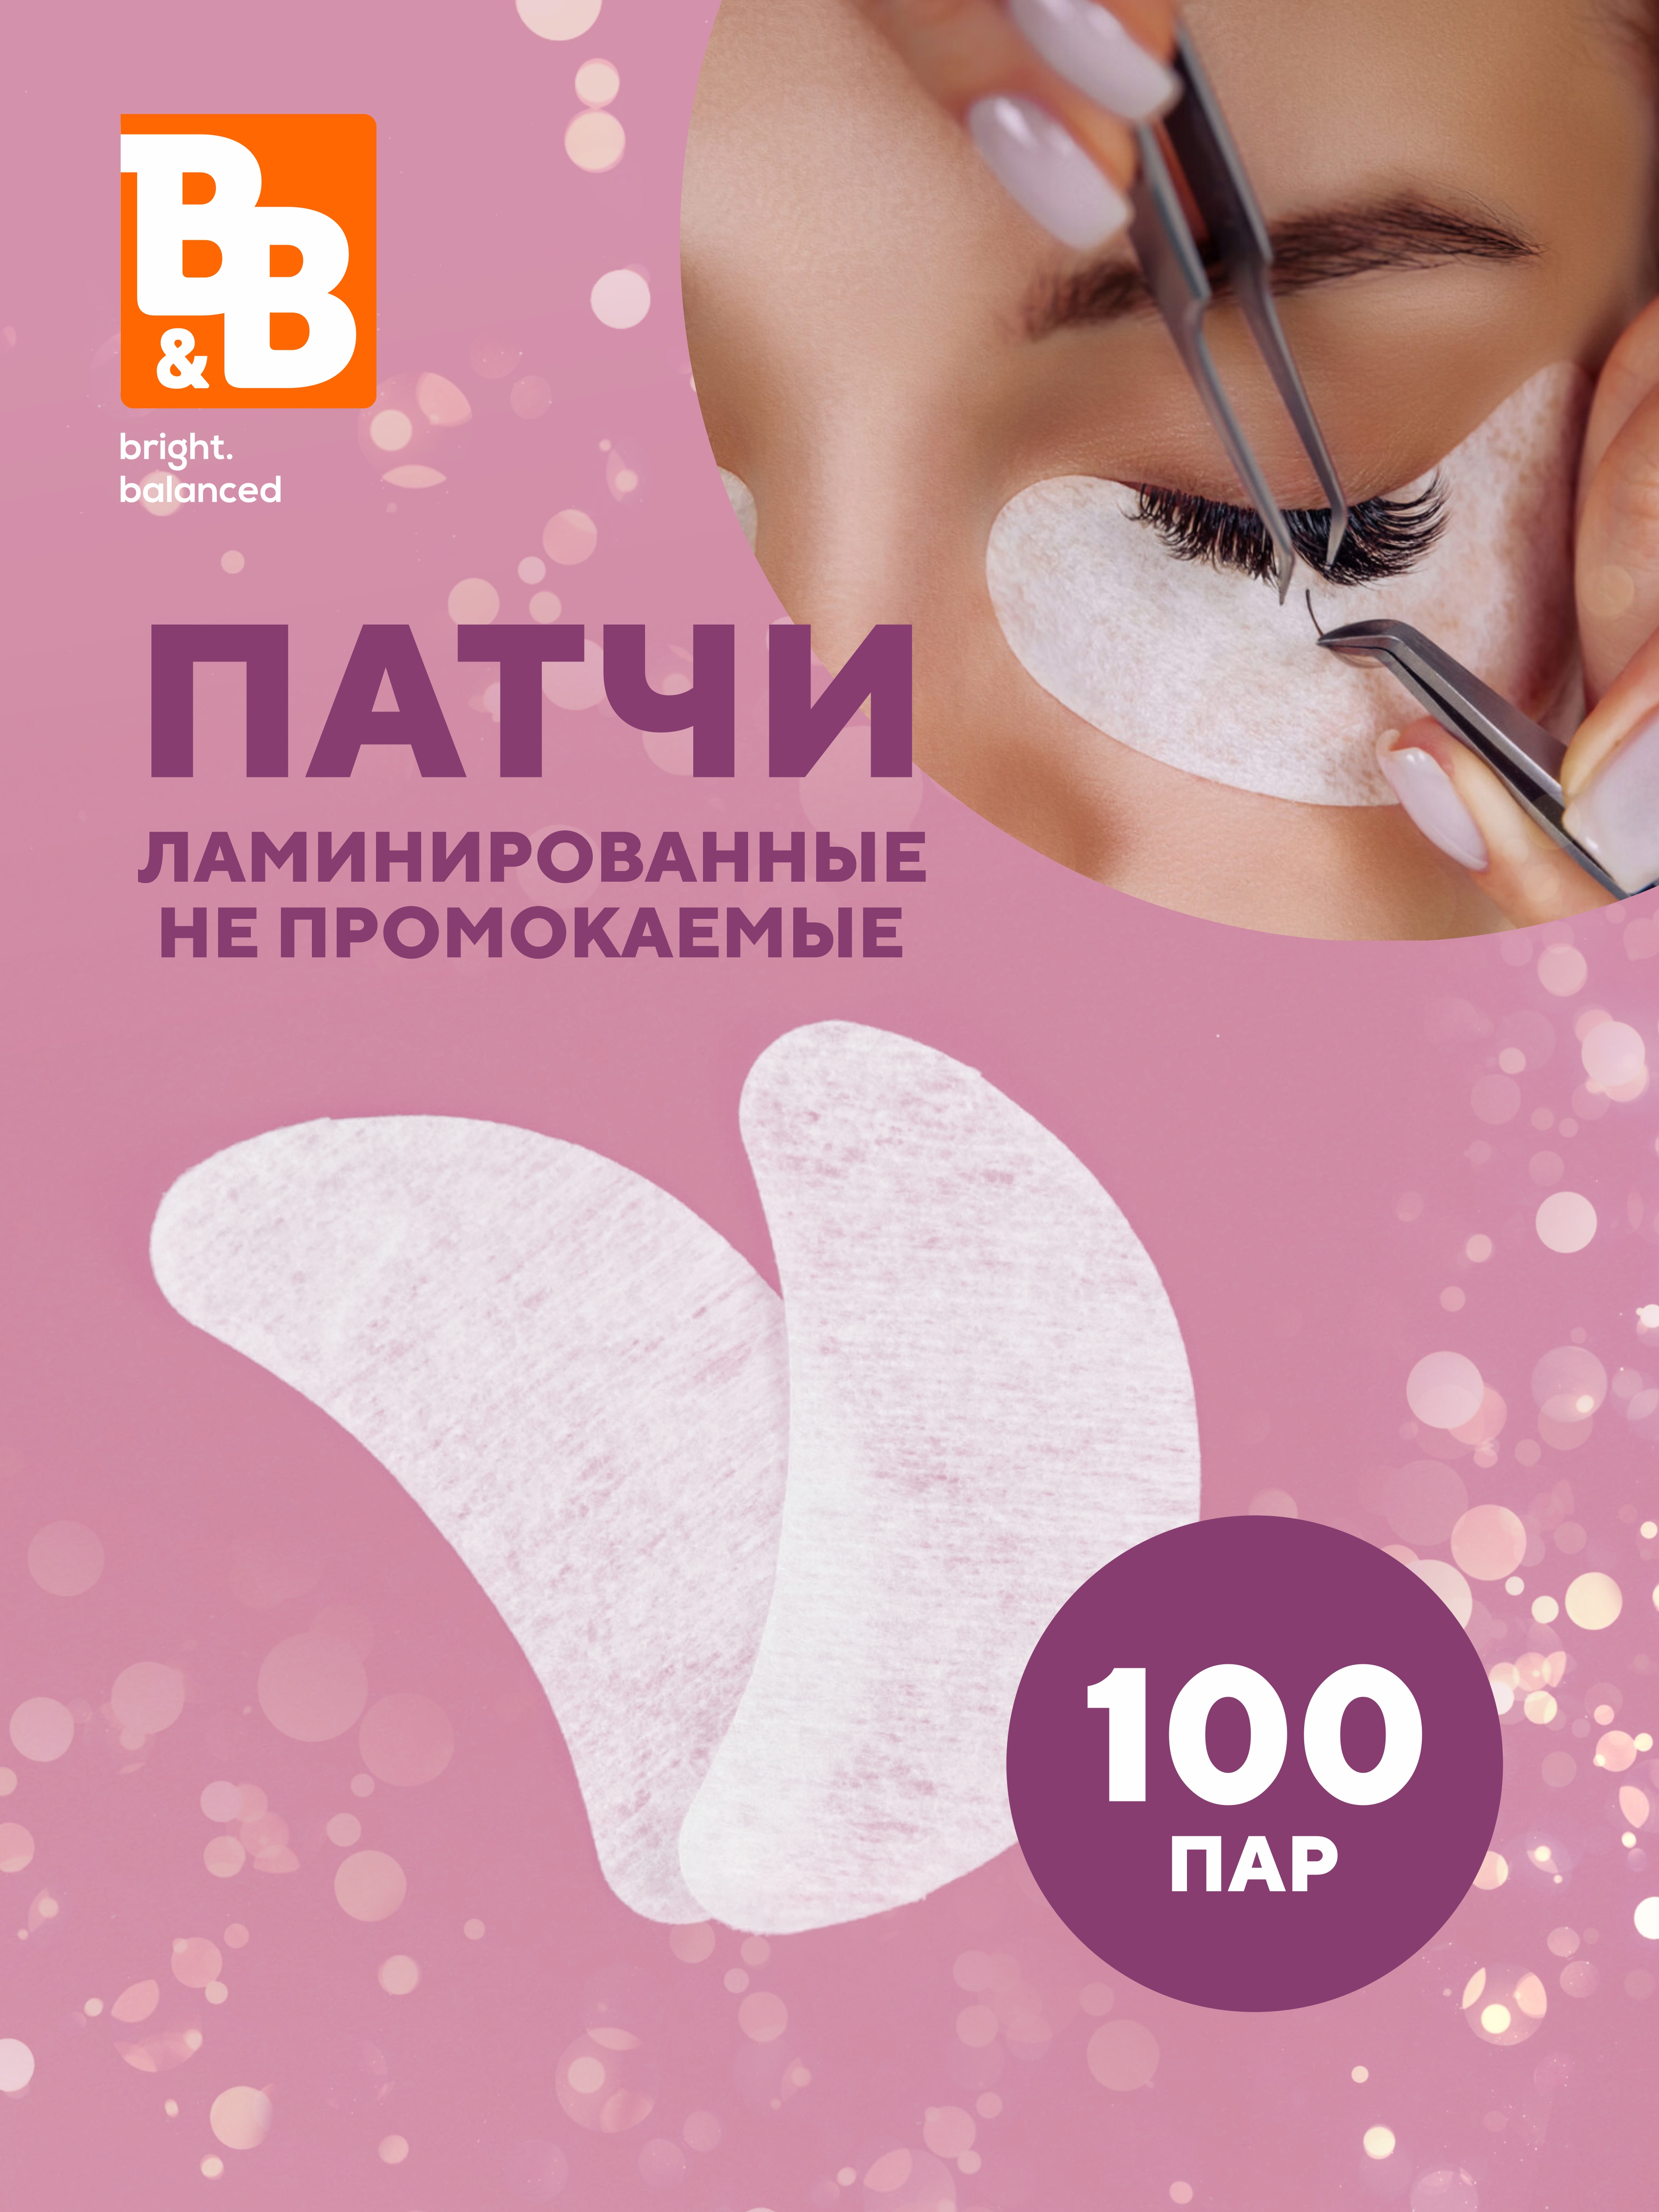 Патчи B&B bright.balanced салфетки косметические бобы, спанлейс 100 шт./уп. носки одноразовые для парафинотерапии утолщенные спанлейс белые 1 пара упак